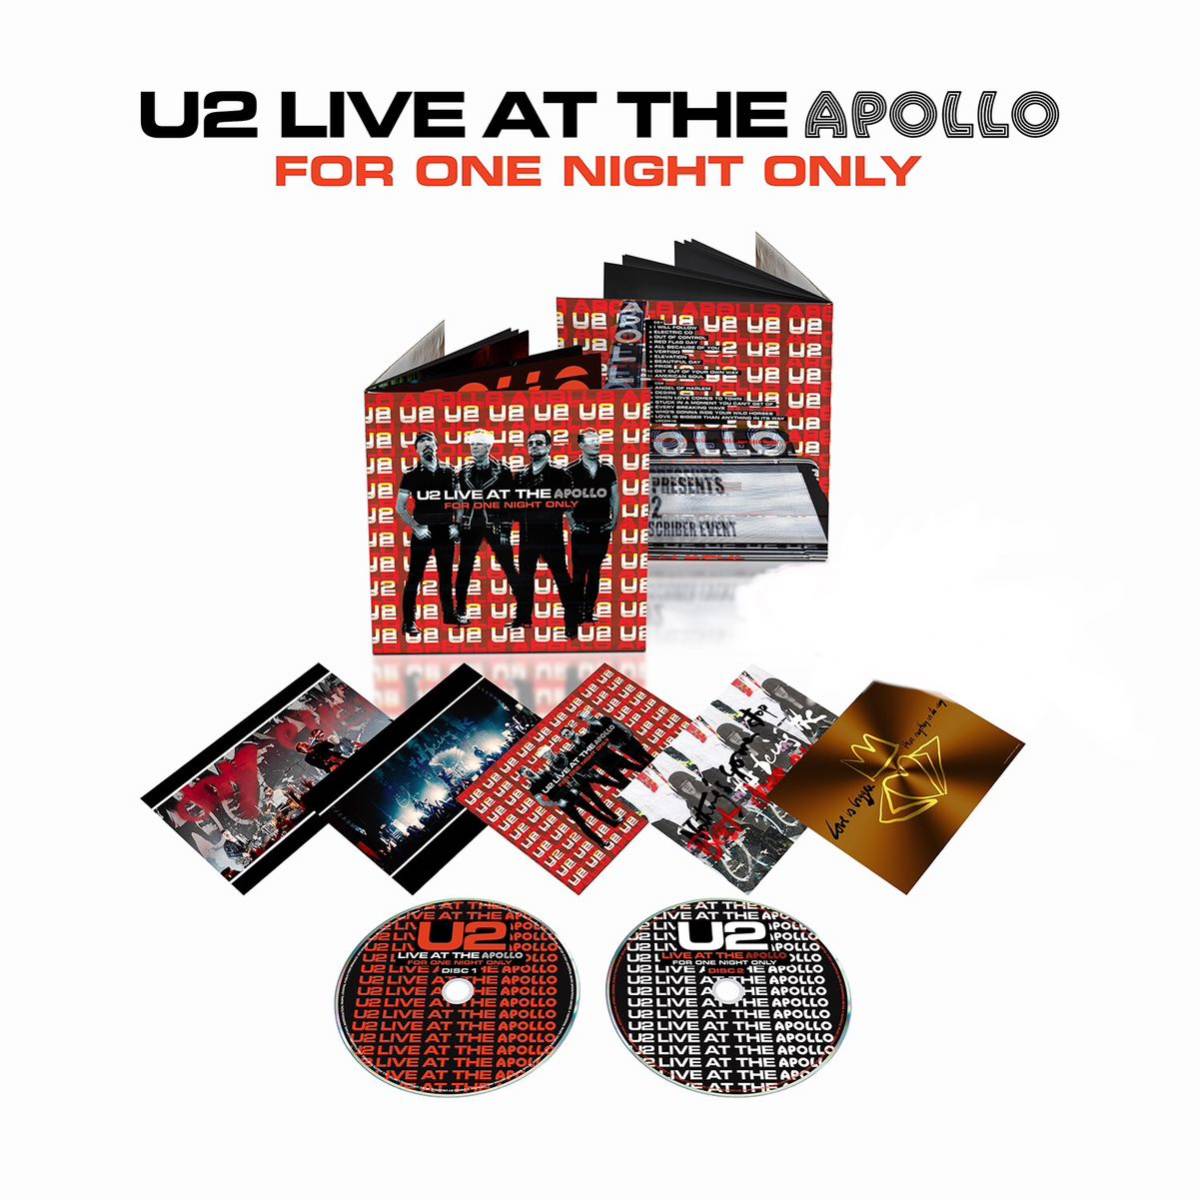 U2 LIVE AT THE APOLLO FOR ONE NIGHT ONLY открытка комплект имеется вентилятор Club ограничение CD новый товар нераспечатанный 